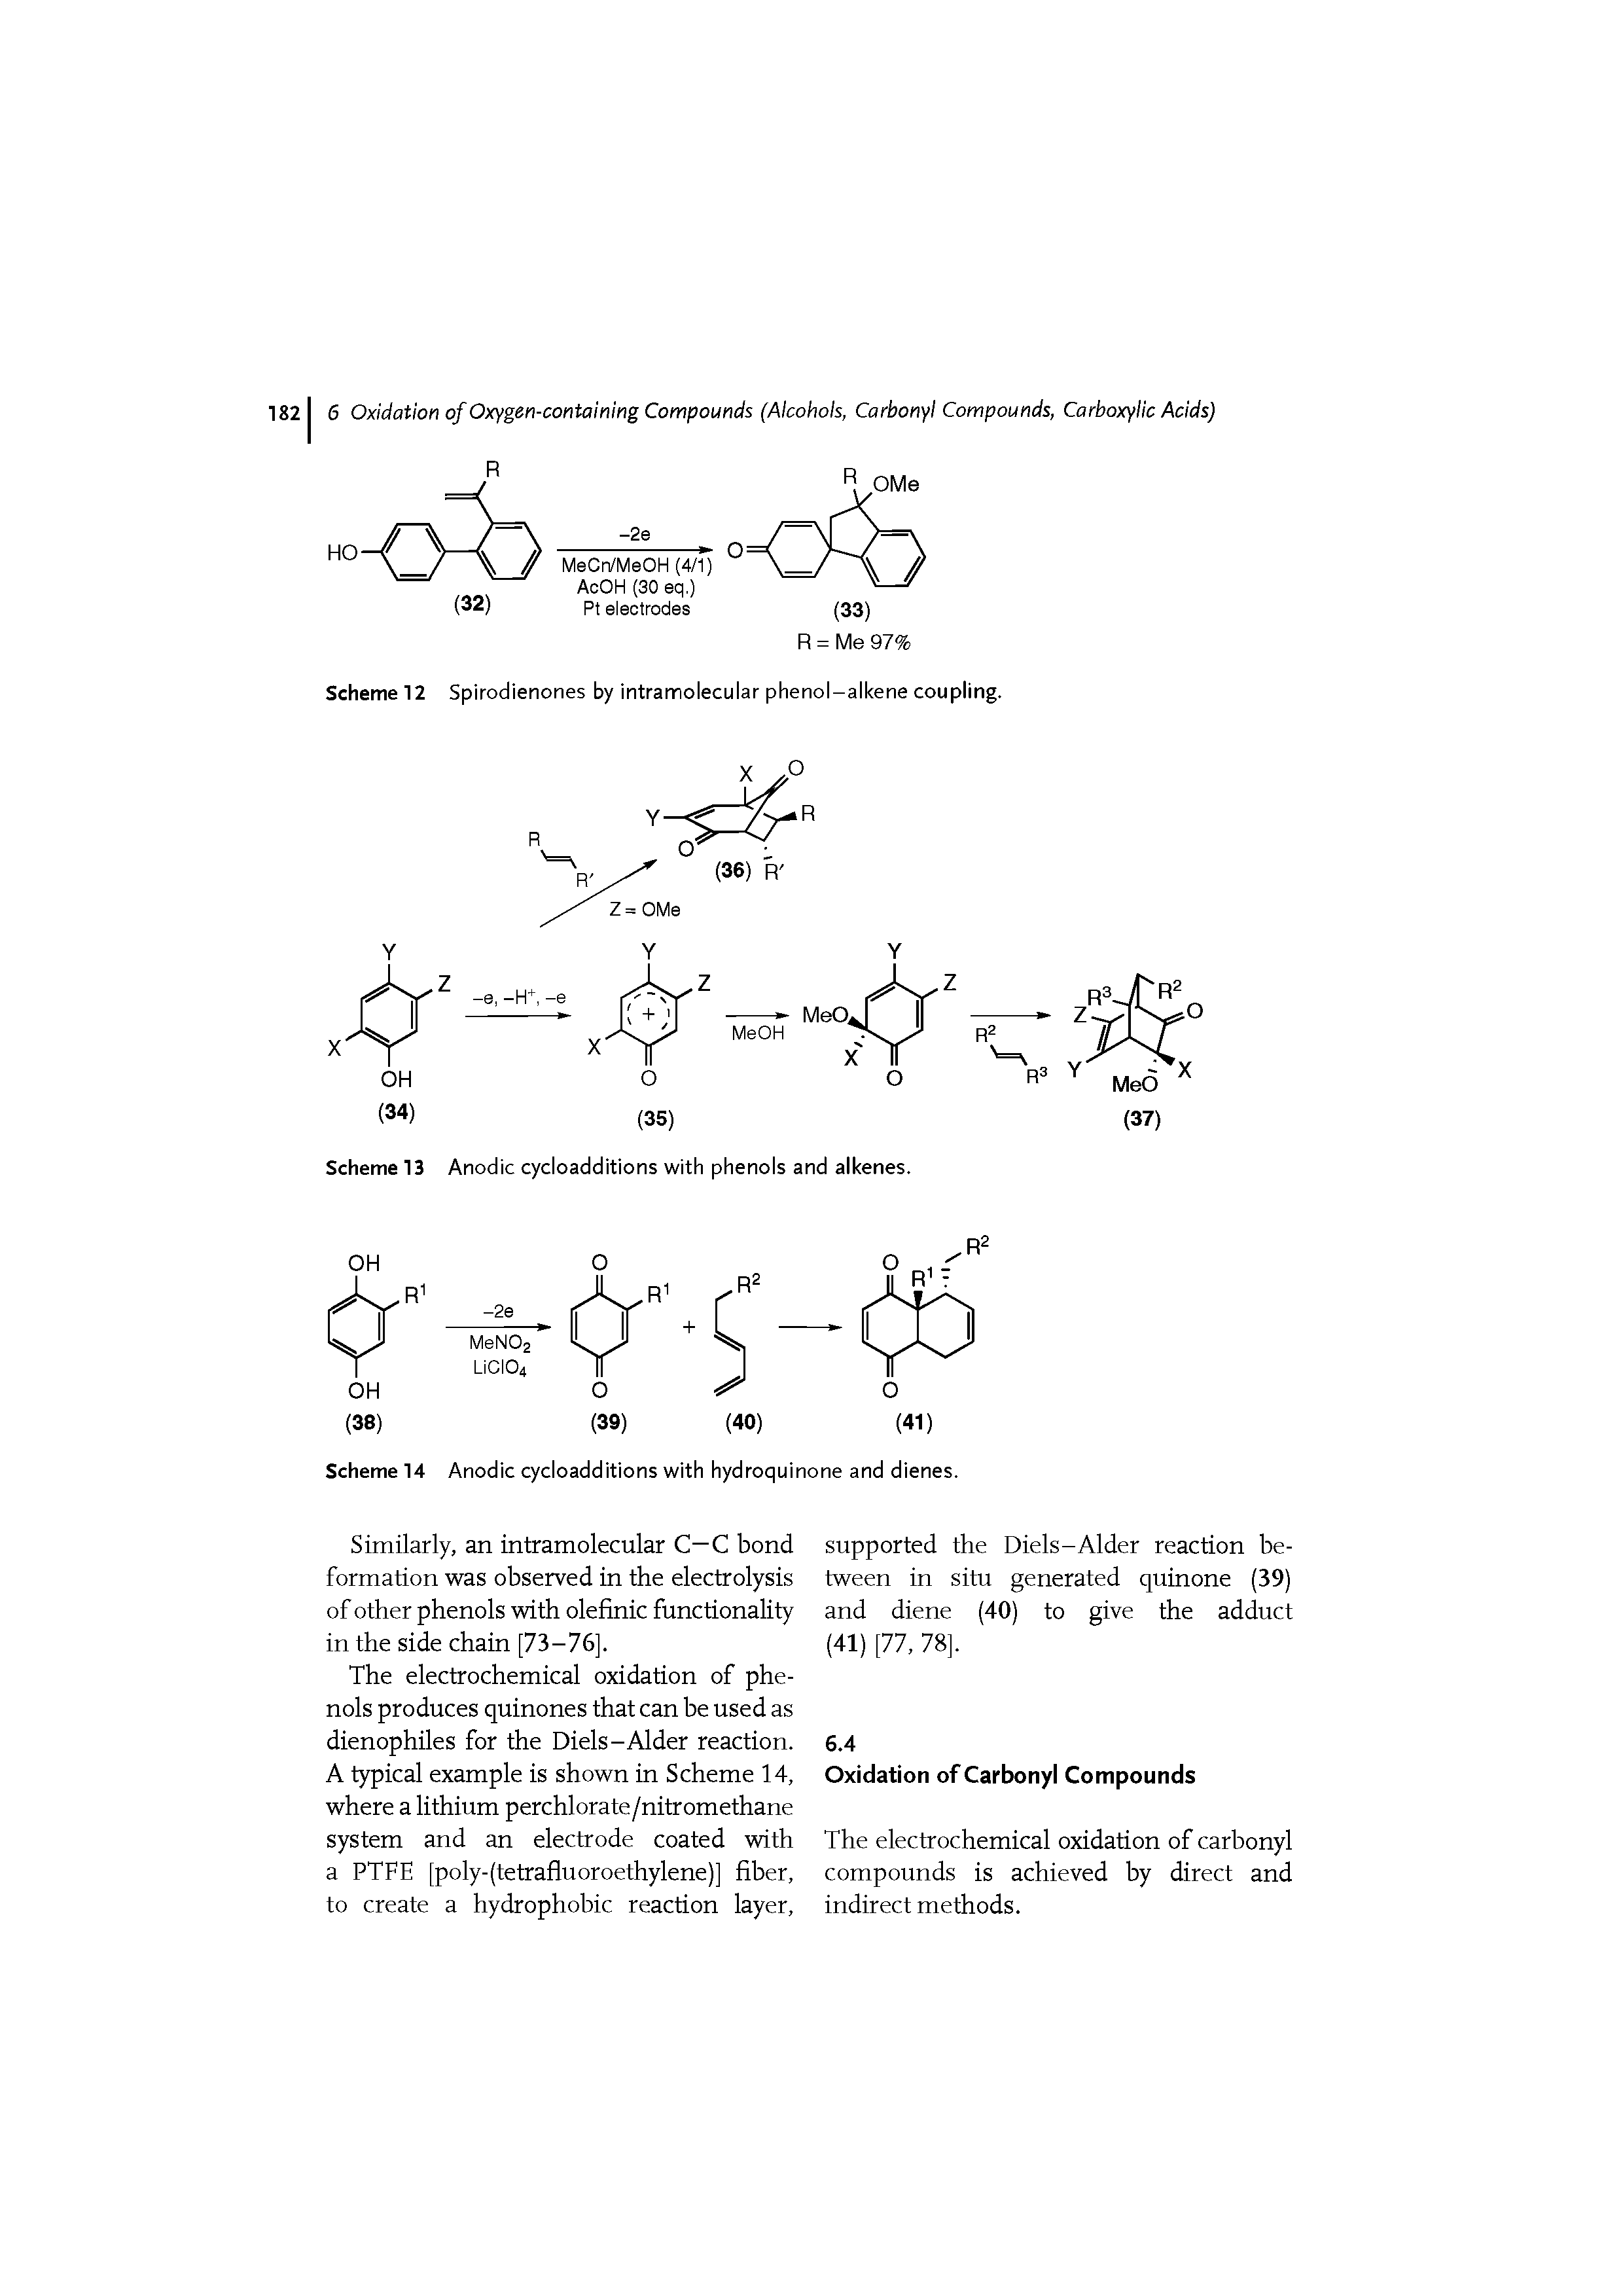 Scheme 12 Spirodienones by intramolecular phenol-alkene coupling.